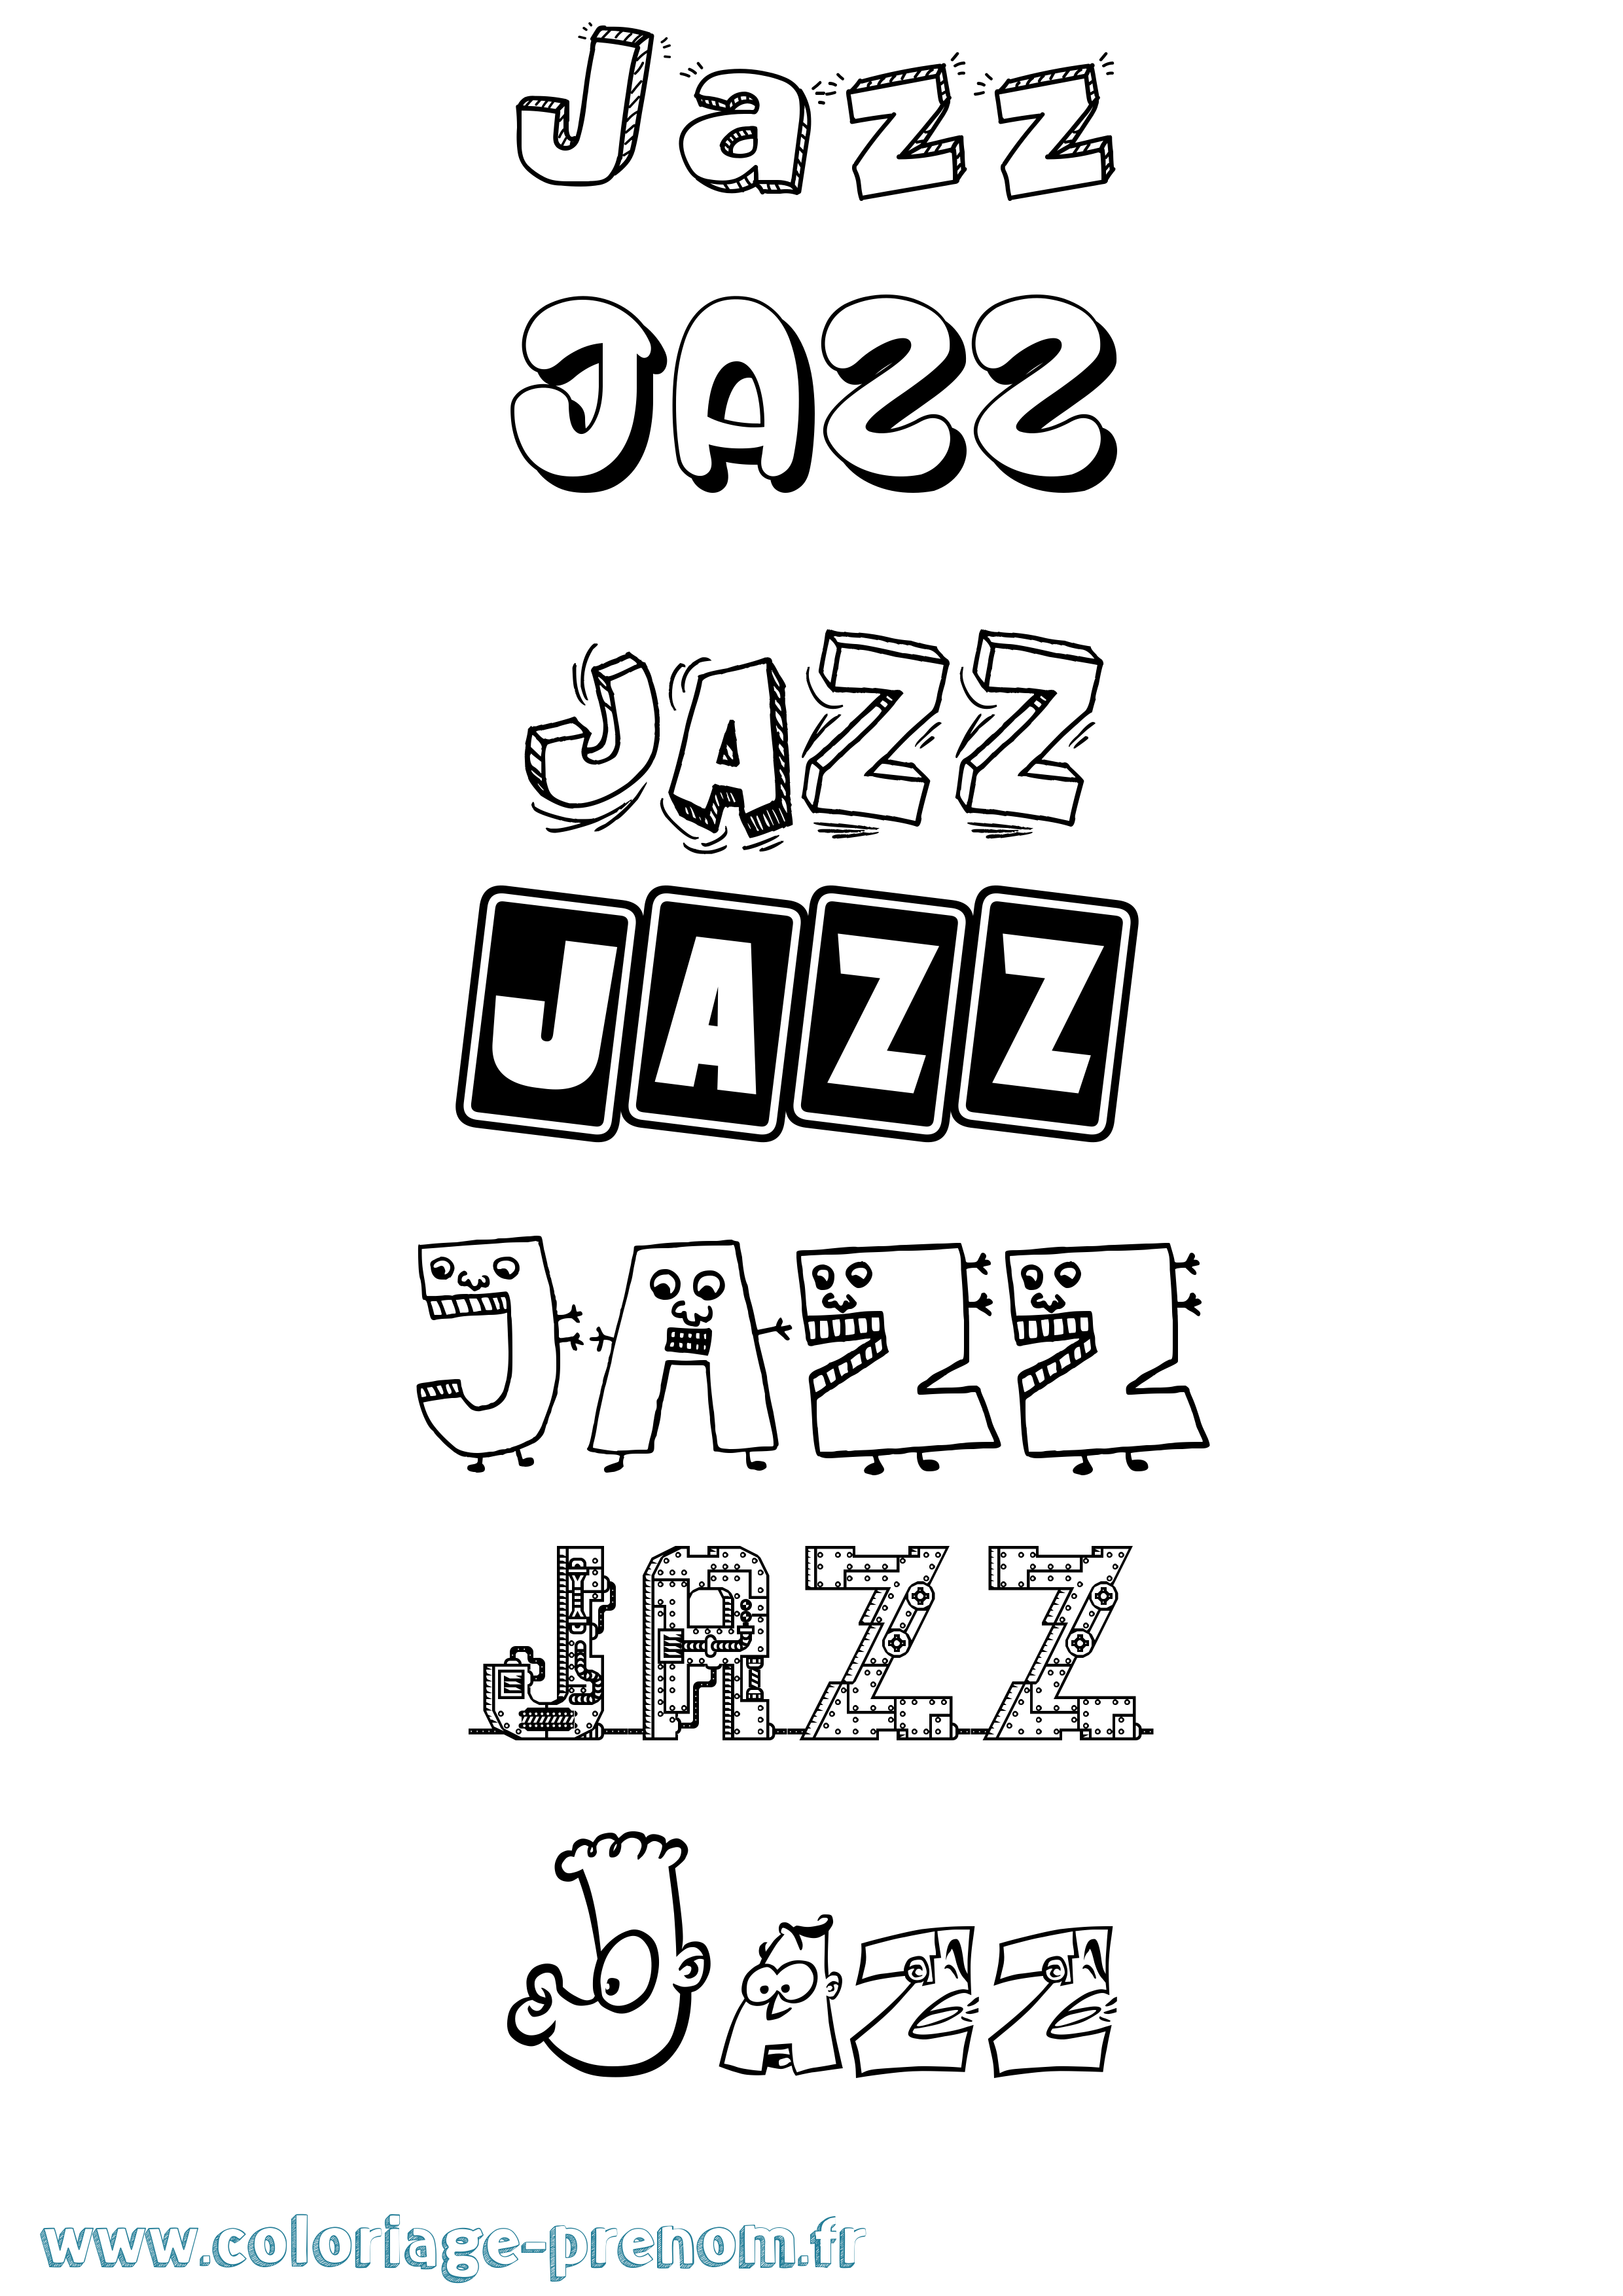 Coloriage prénom Jazz Fun